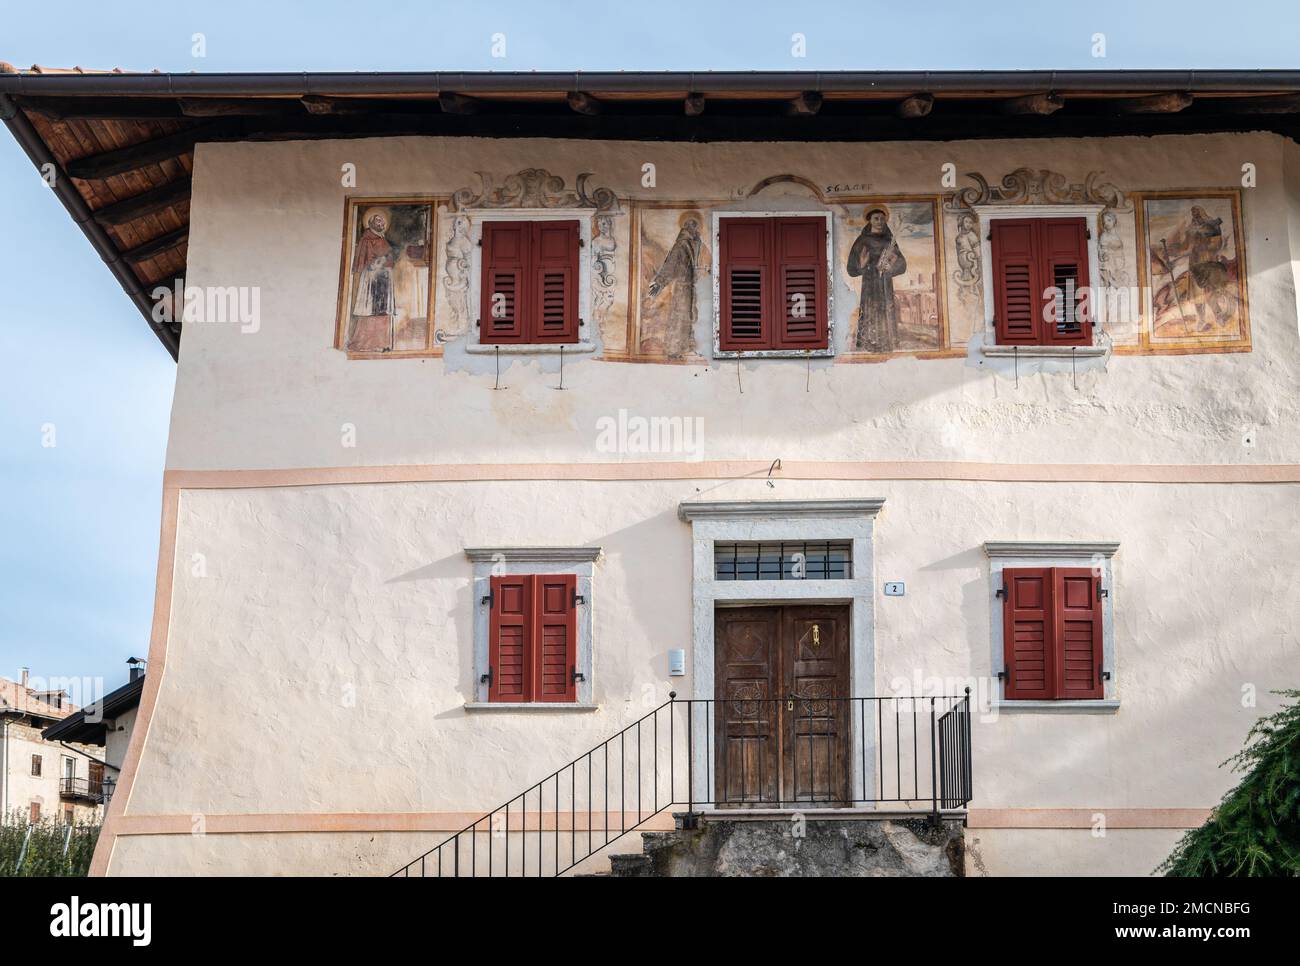 The medieval Casez Castle (or Palazzo Concini) XV century-  details of the facade, Sanzeno, Non valley, Trento province, Trentino Alto-Adige, Italy, E Stock Photo